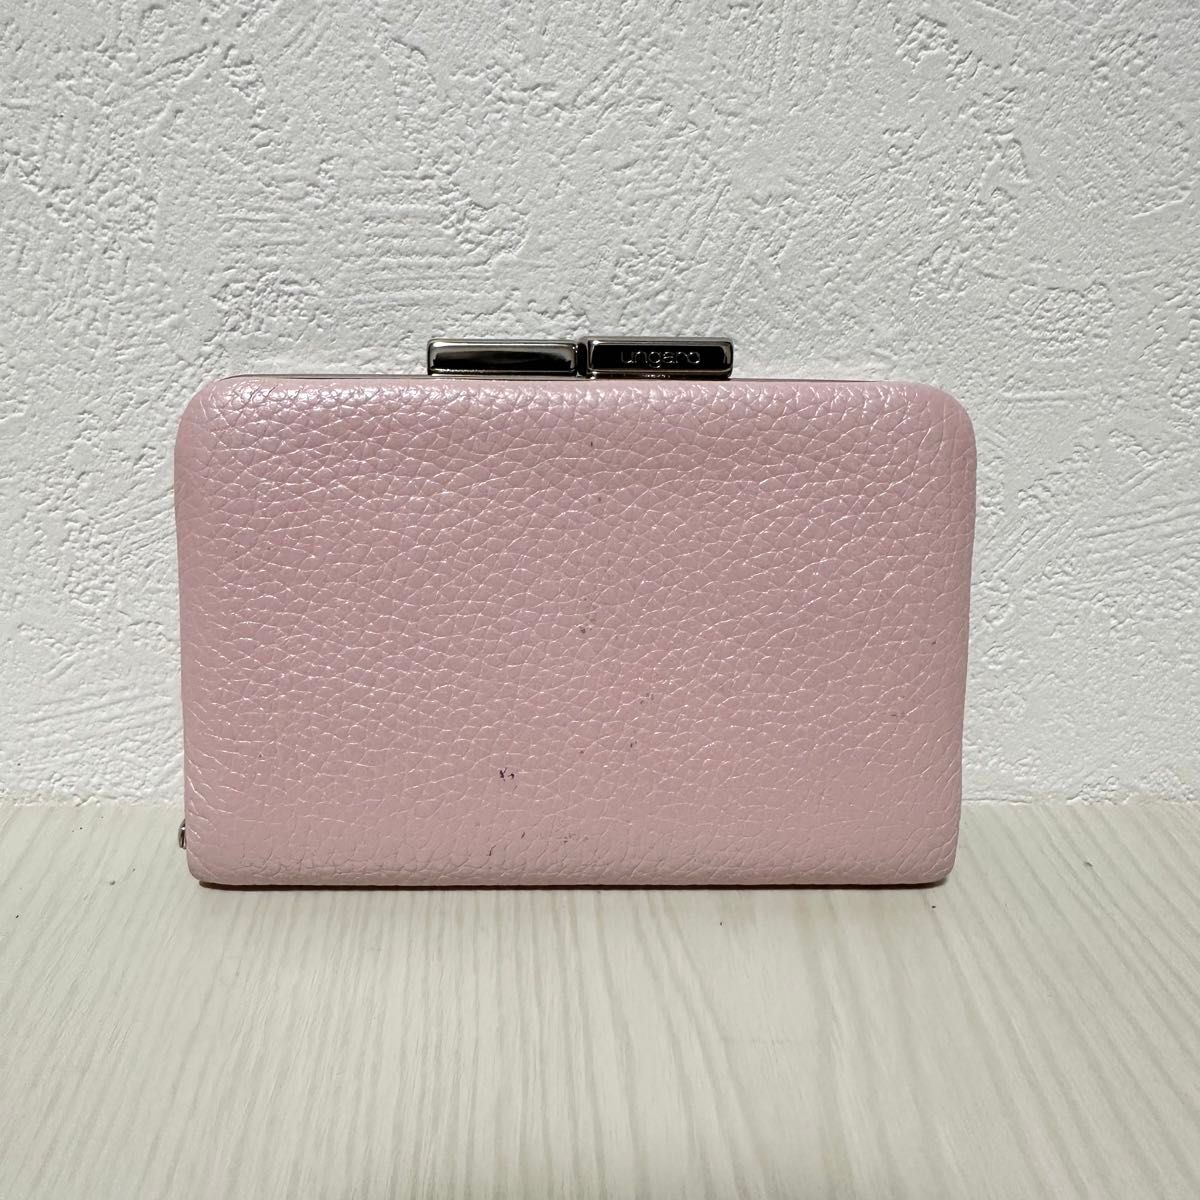 ウンガロ 未使用品 がま口 コインケース コンパクトウォレット ピンク 財布